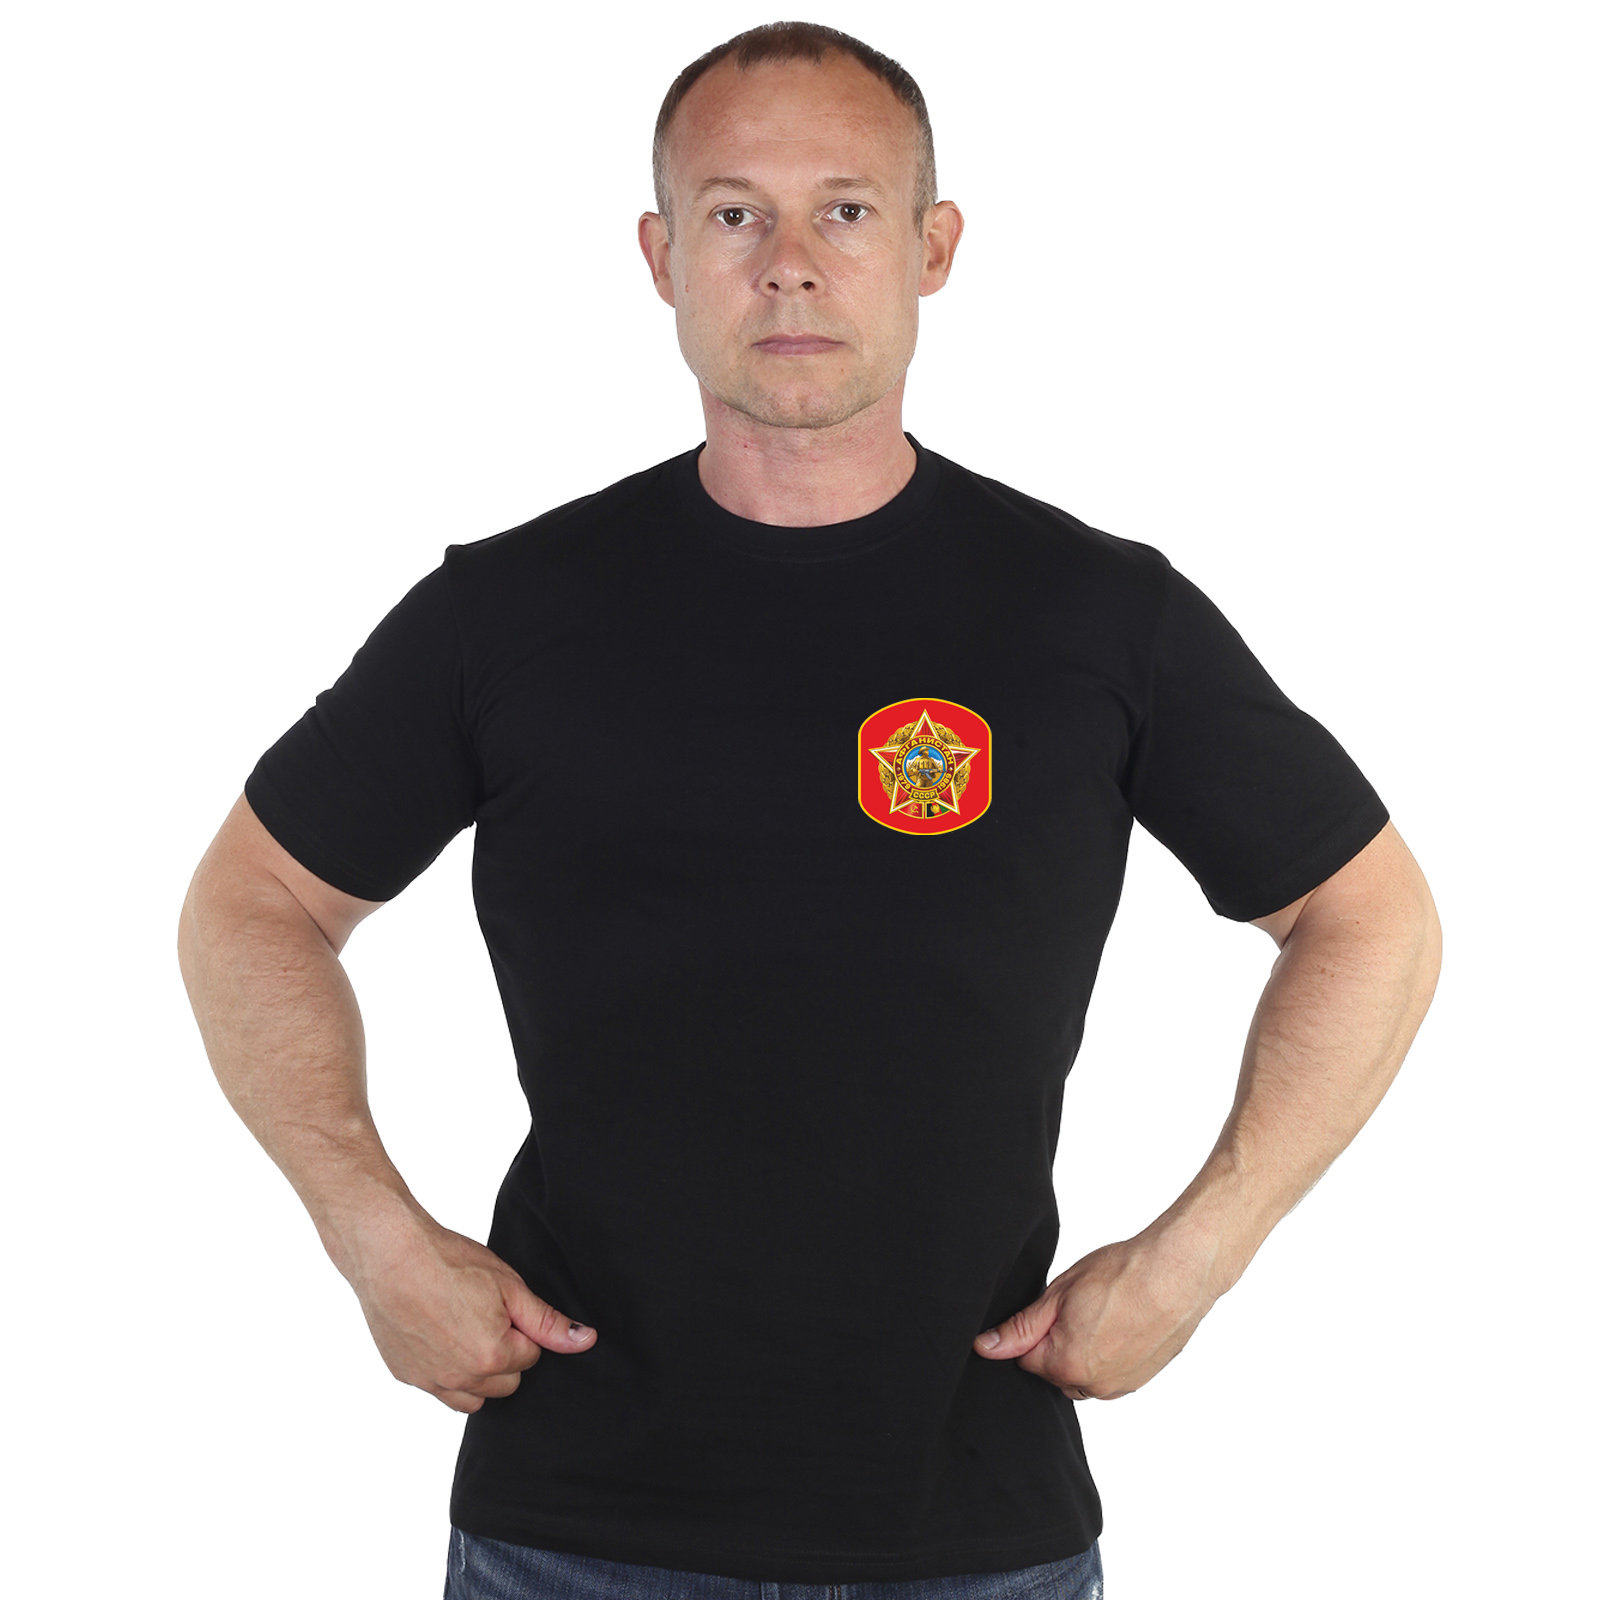 Чёрная футболка с термотрансфером "Афганистан 1979-1989" 